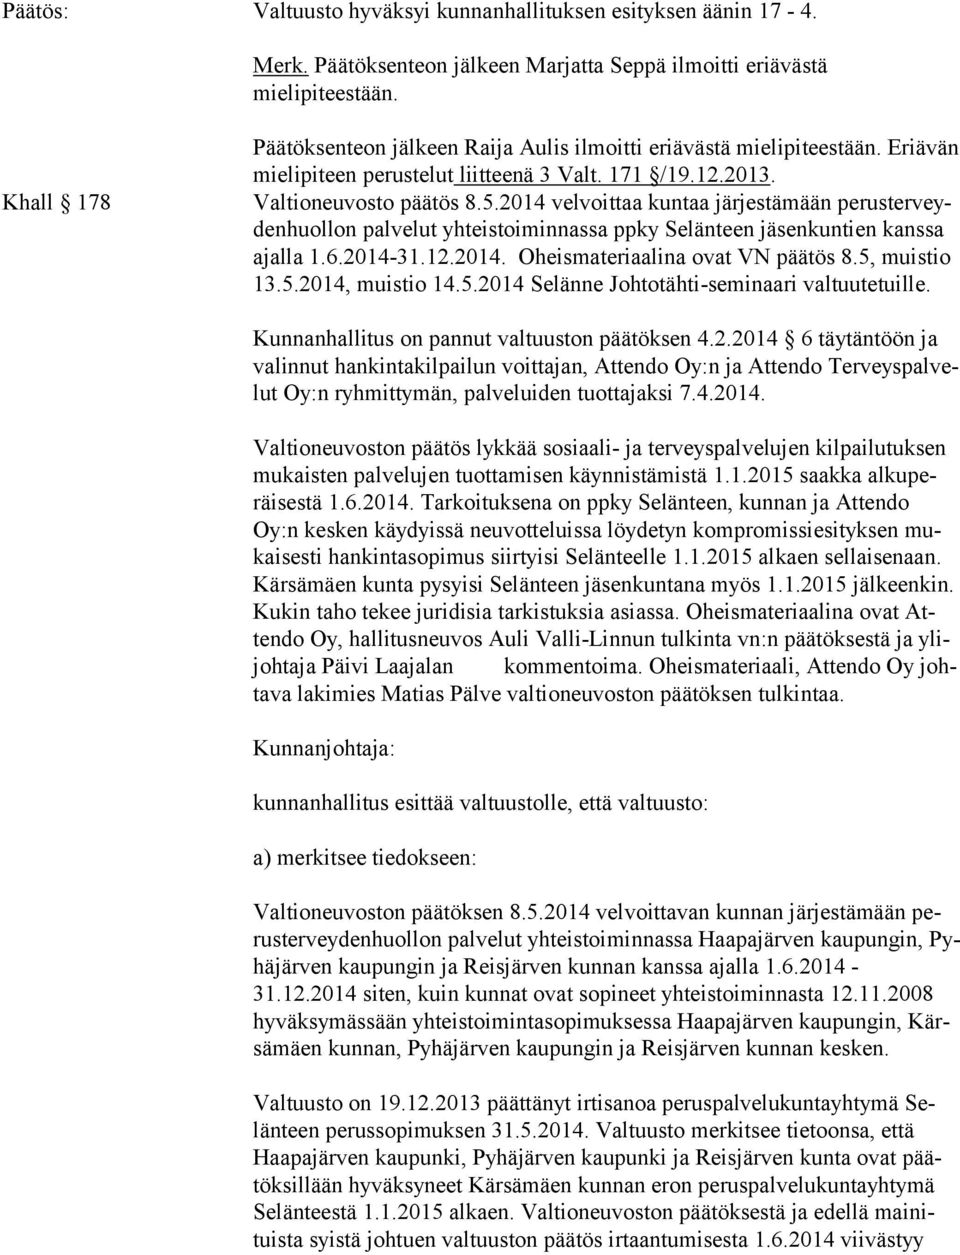 2014 velvoittaa kuntaa järjestämään pe rus ter veyden huol lon palvelut yhteistoiminnassa ppky Selänteen jäsenkuntien kanssa ajal la 1.6.2014-31.12.2014. Oheismateriaalina ovat VN päätös 8.